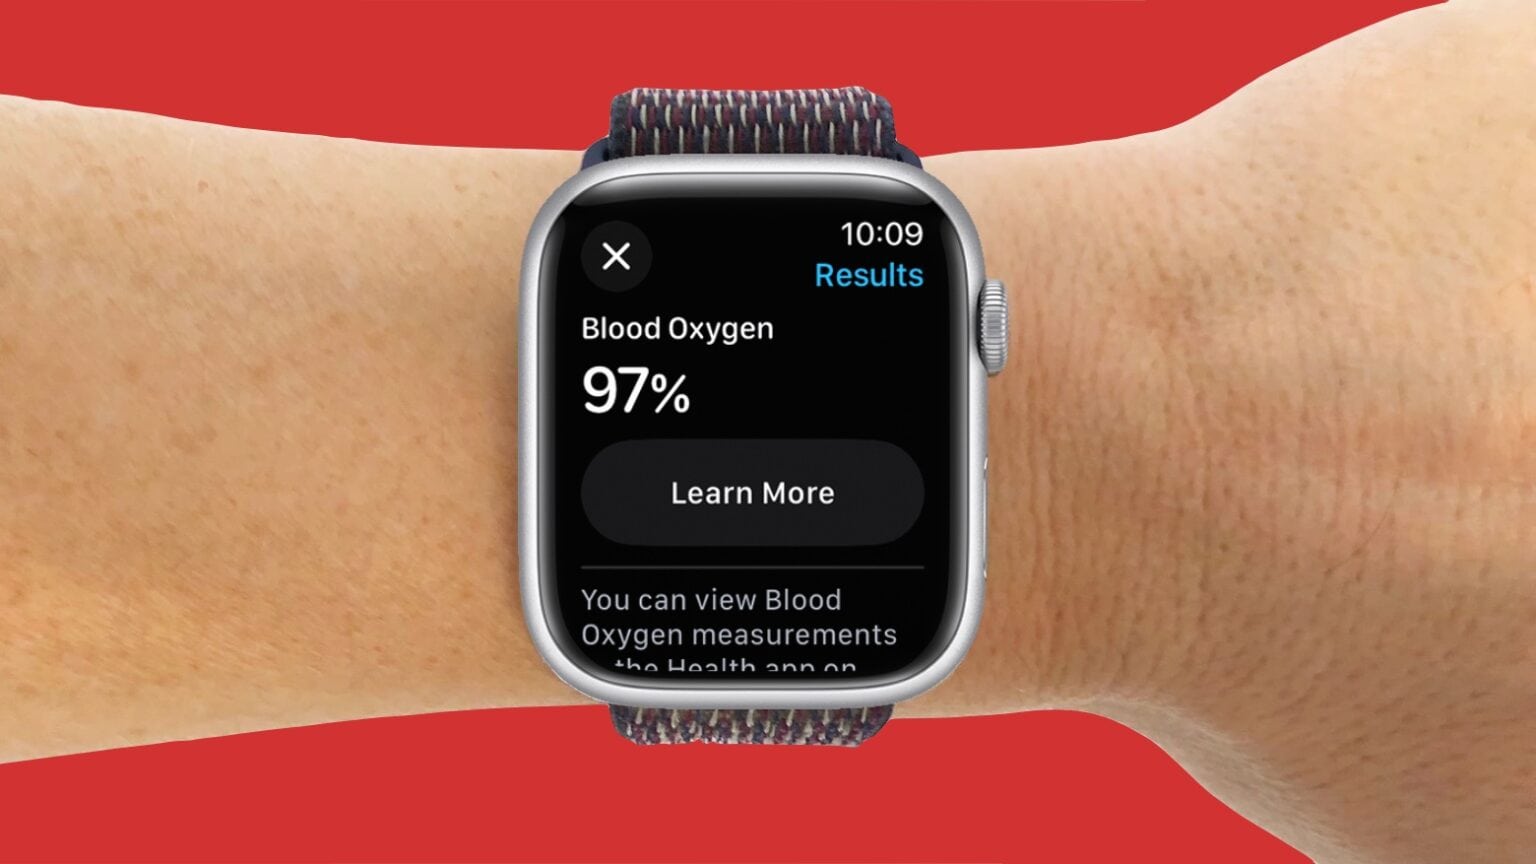 Apple Watch Blood Oxygen app